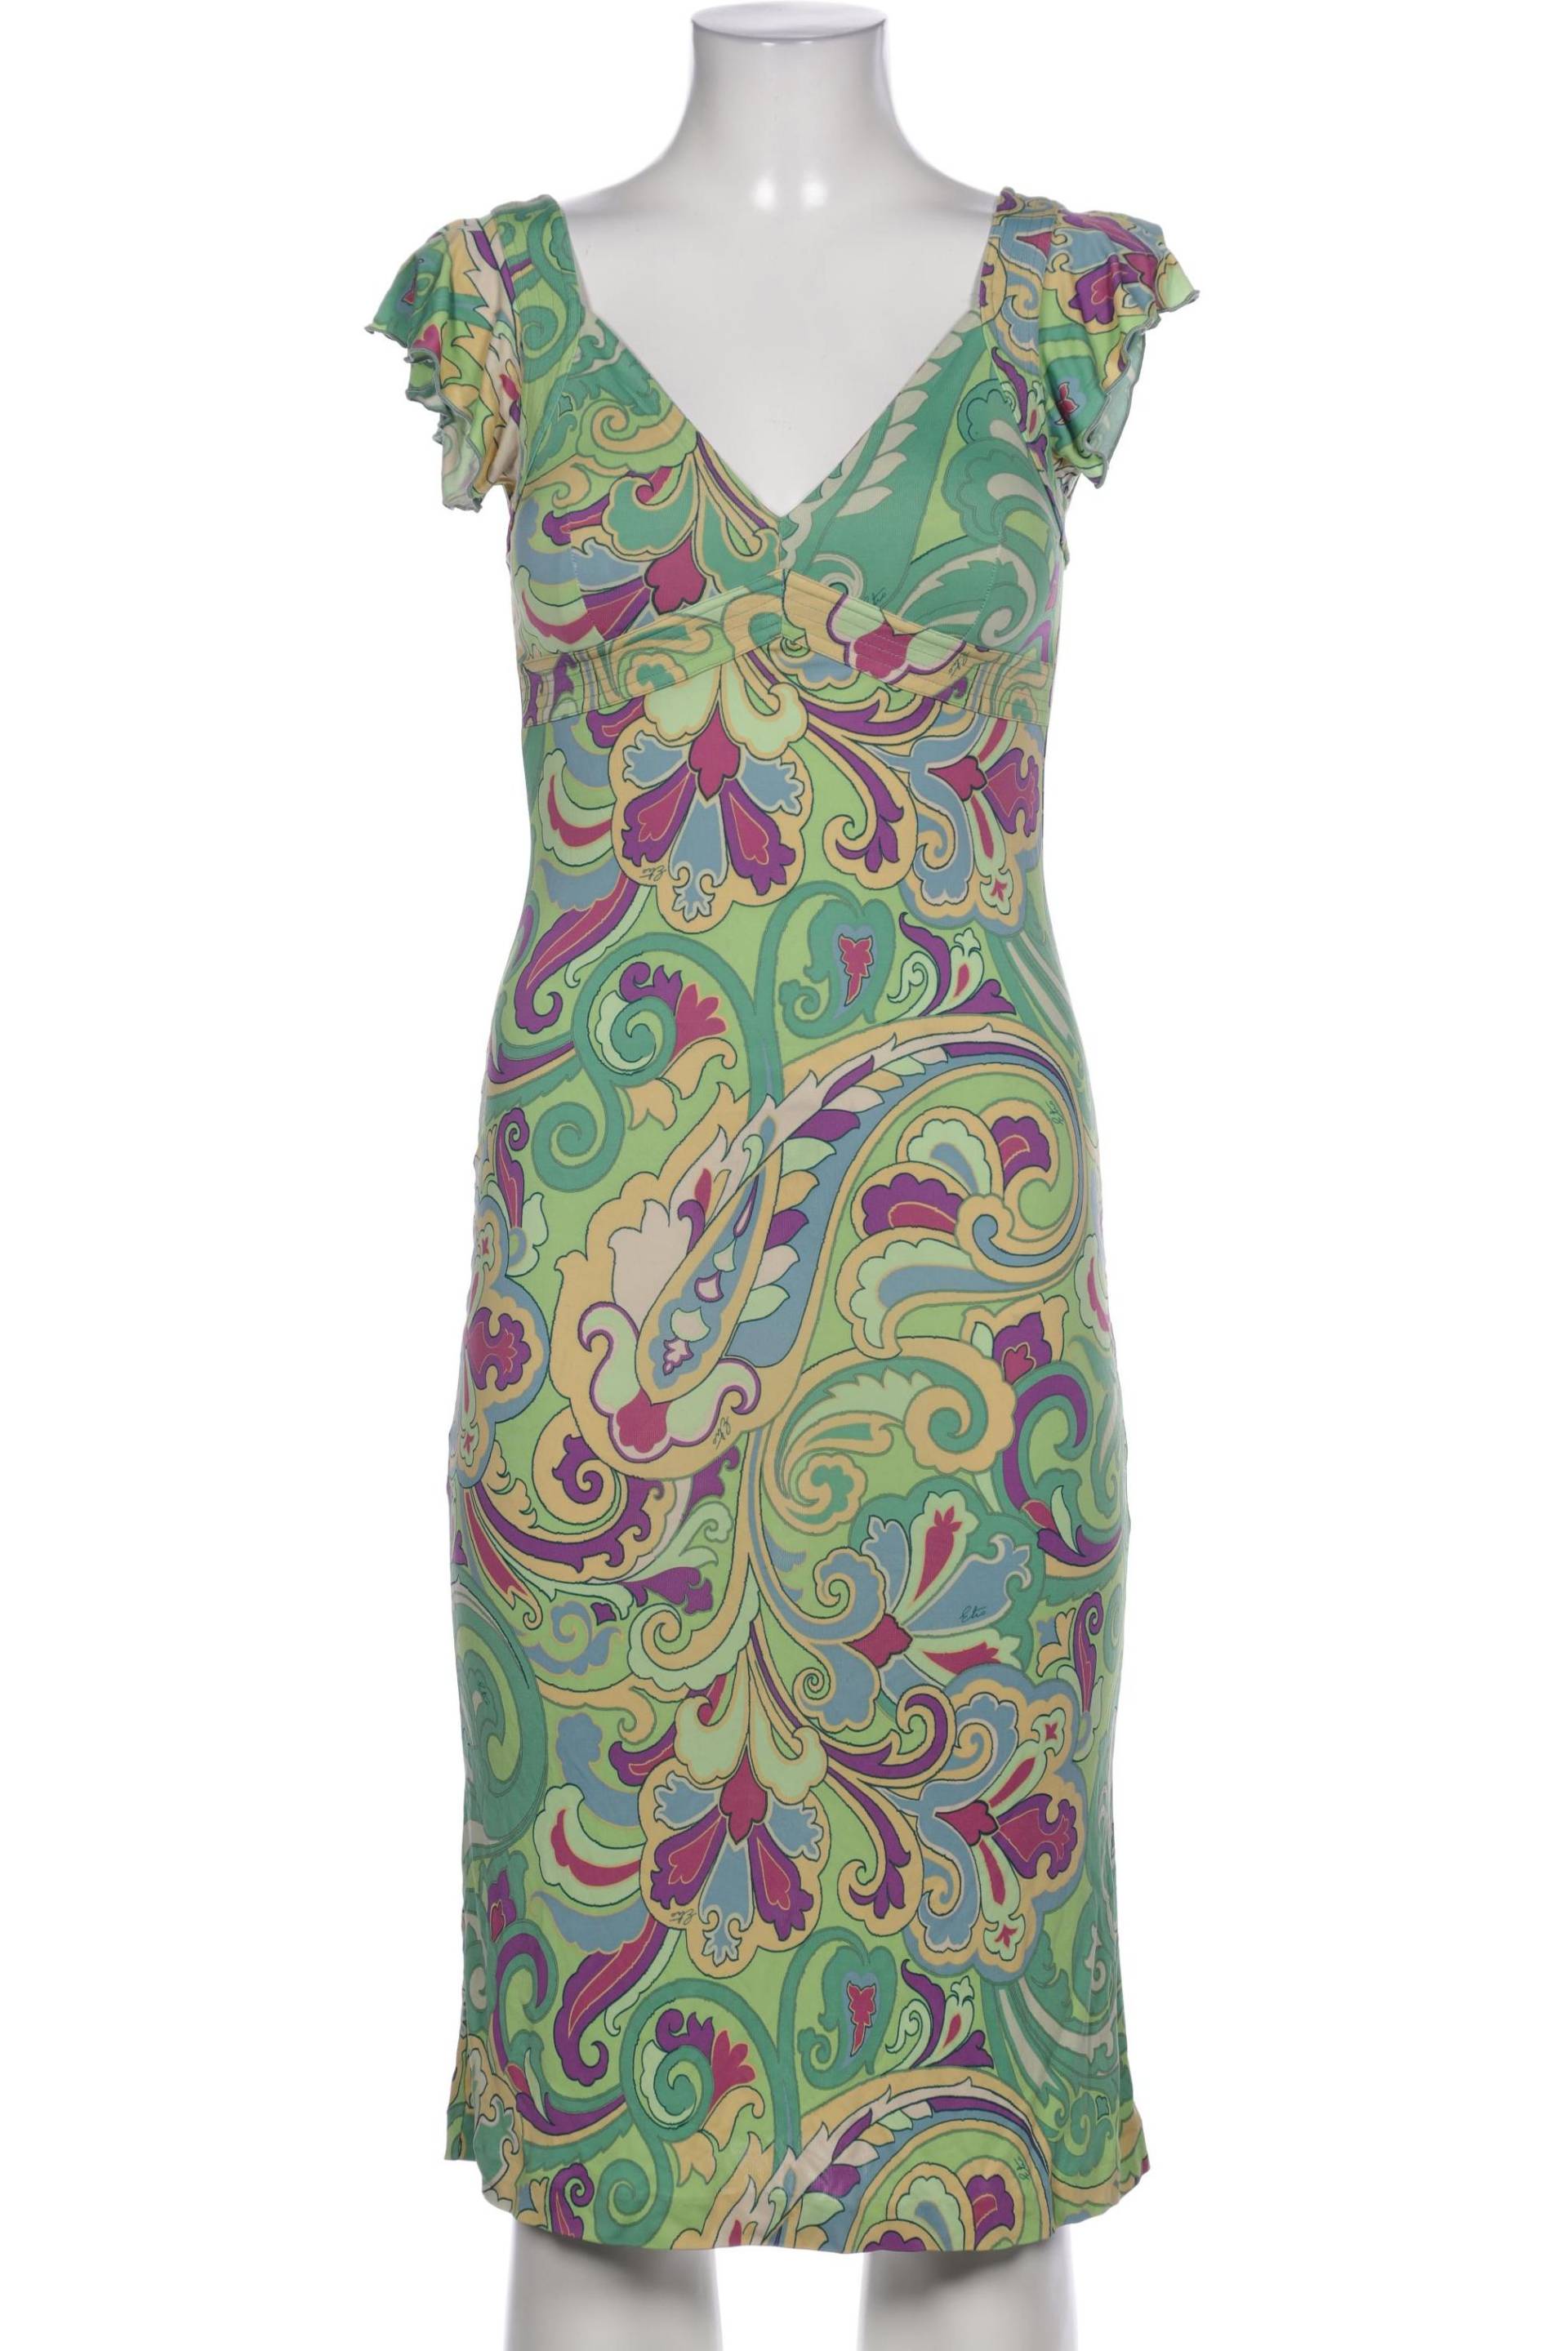 Etro Damen Kleid, mehrfarbig, Gr. 40 von ETRO